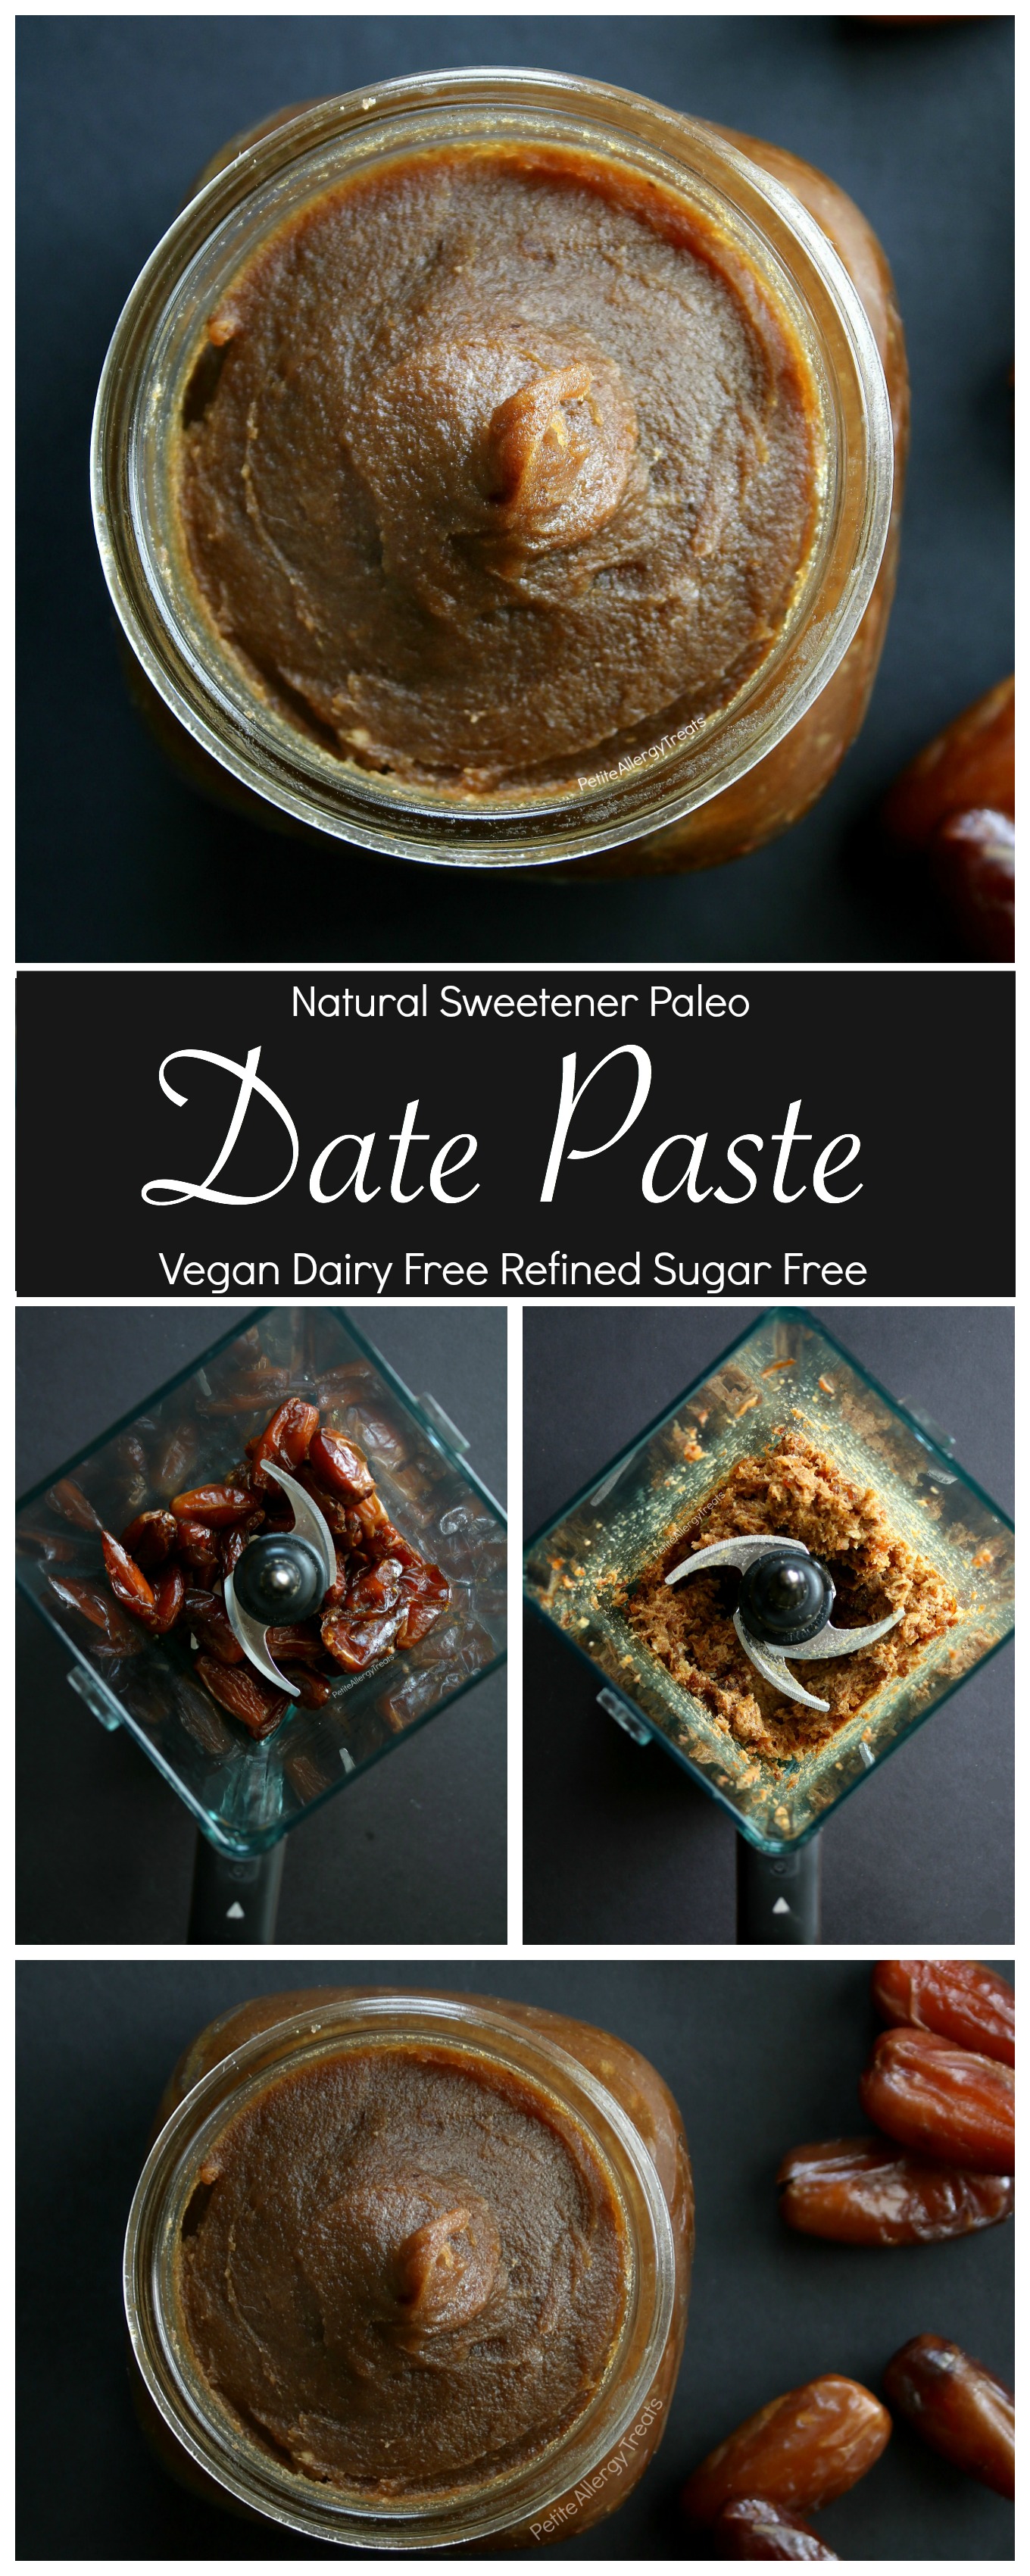 Paleo Date Paste Sweetener- Refined sugar free sweetener- gluten free vegan very Food Allergy Friendly!